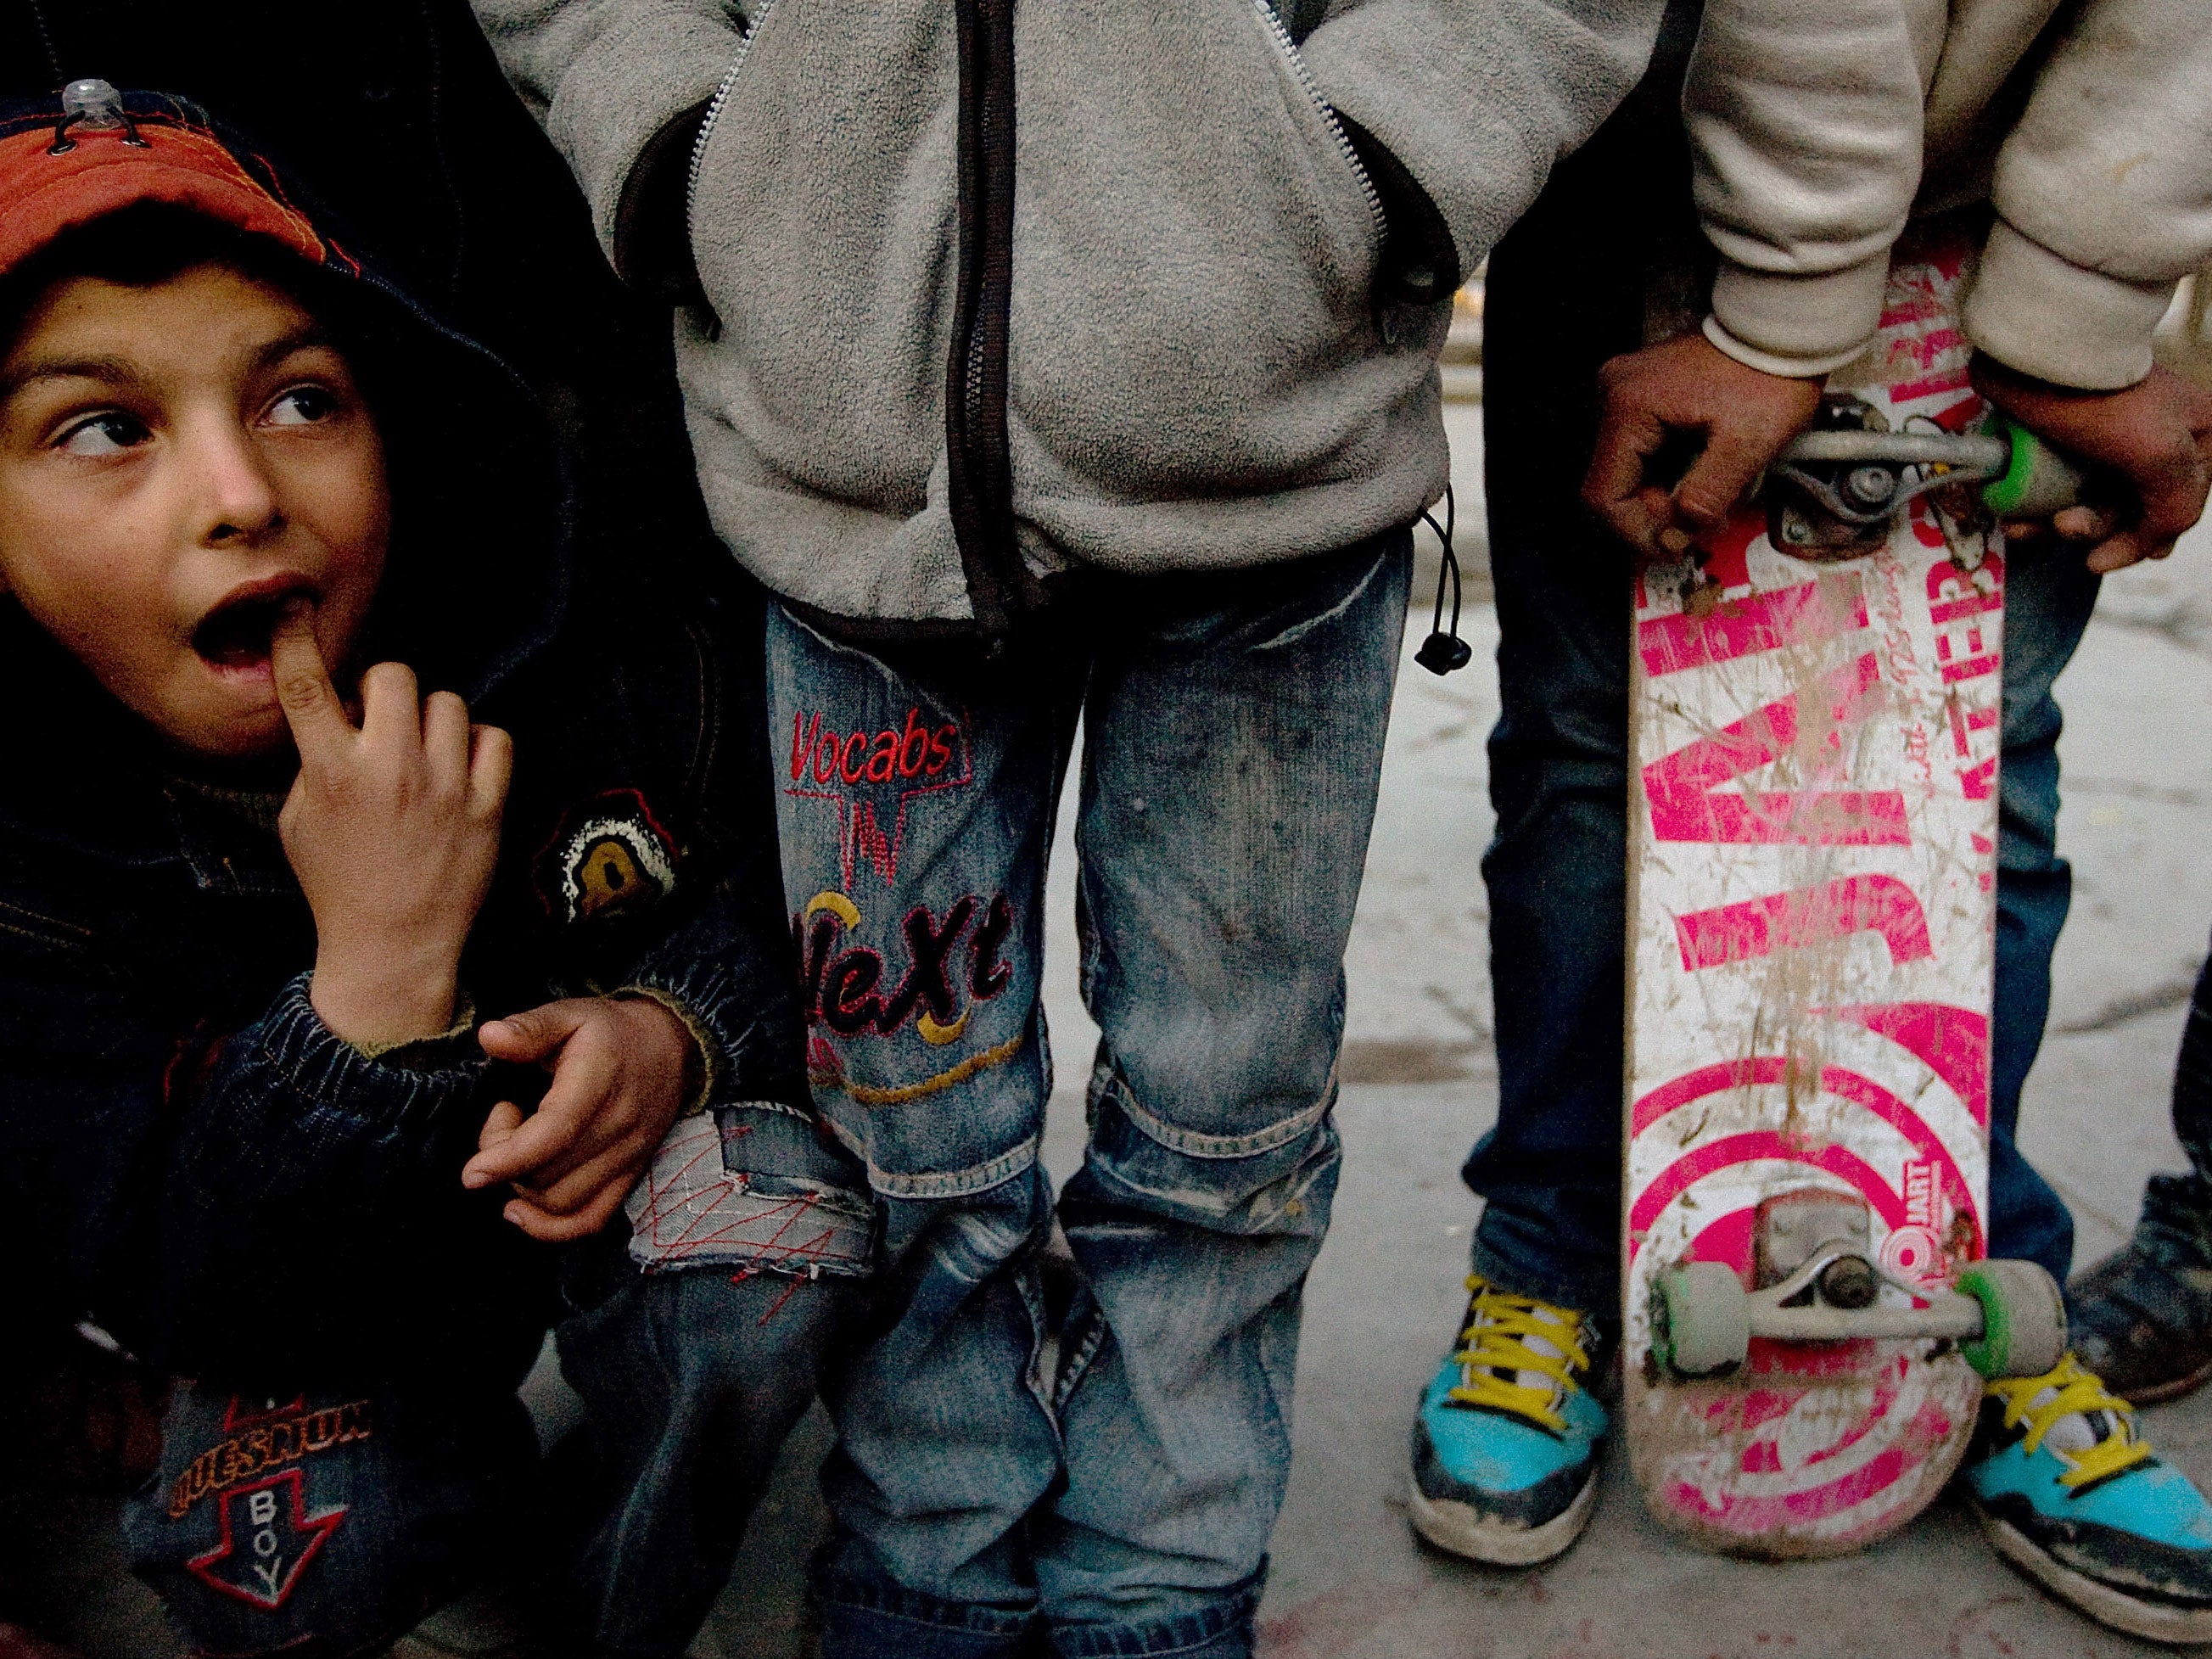 Afghan kids skateboard near their homes on February 01, 2009 in Kabul, Afghanistan.